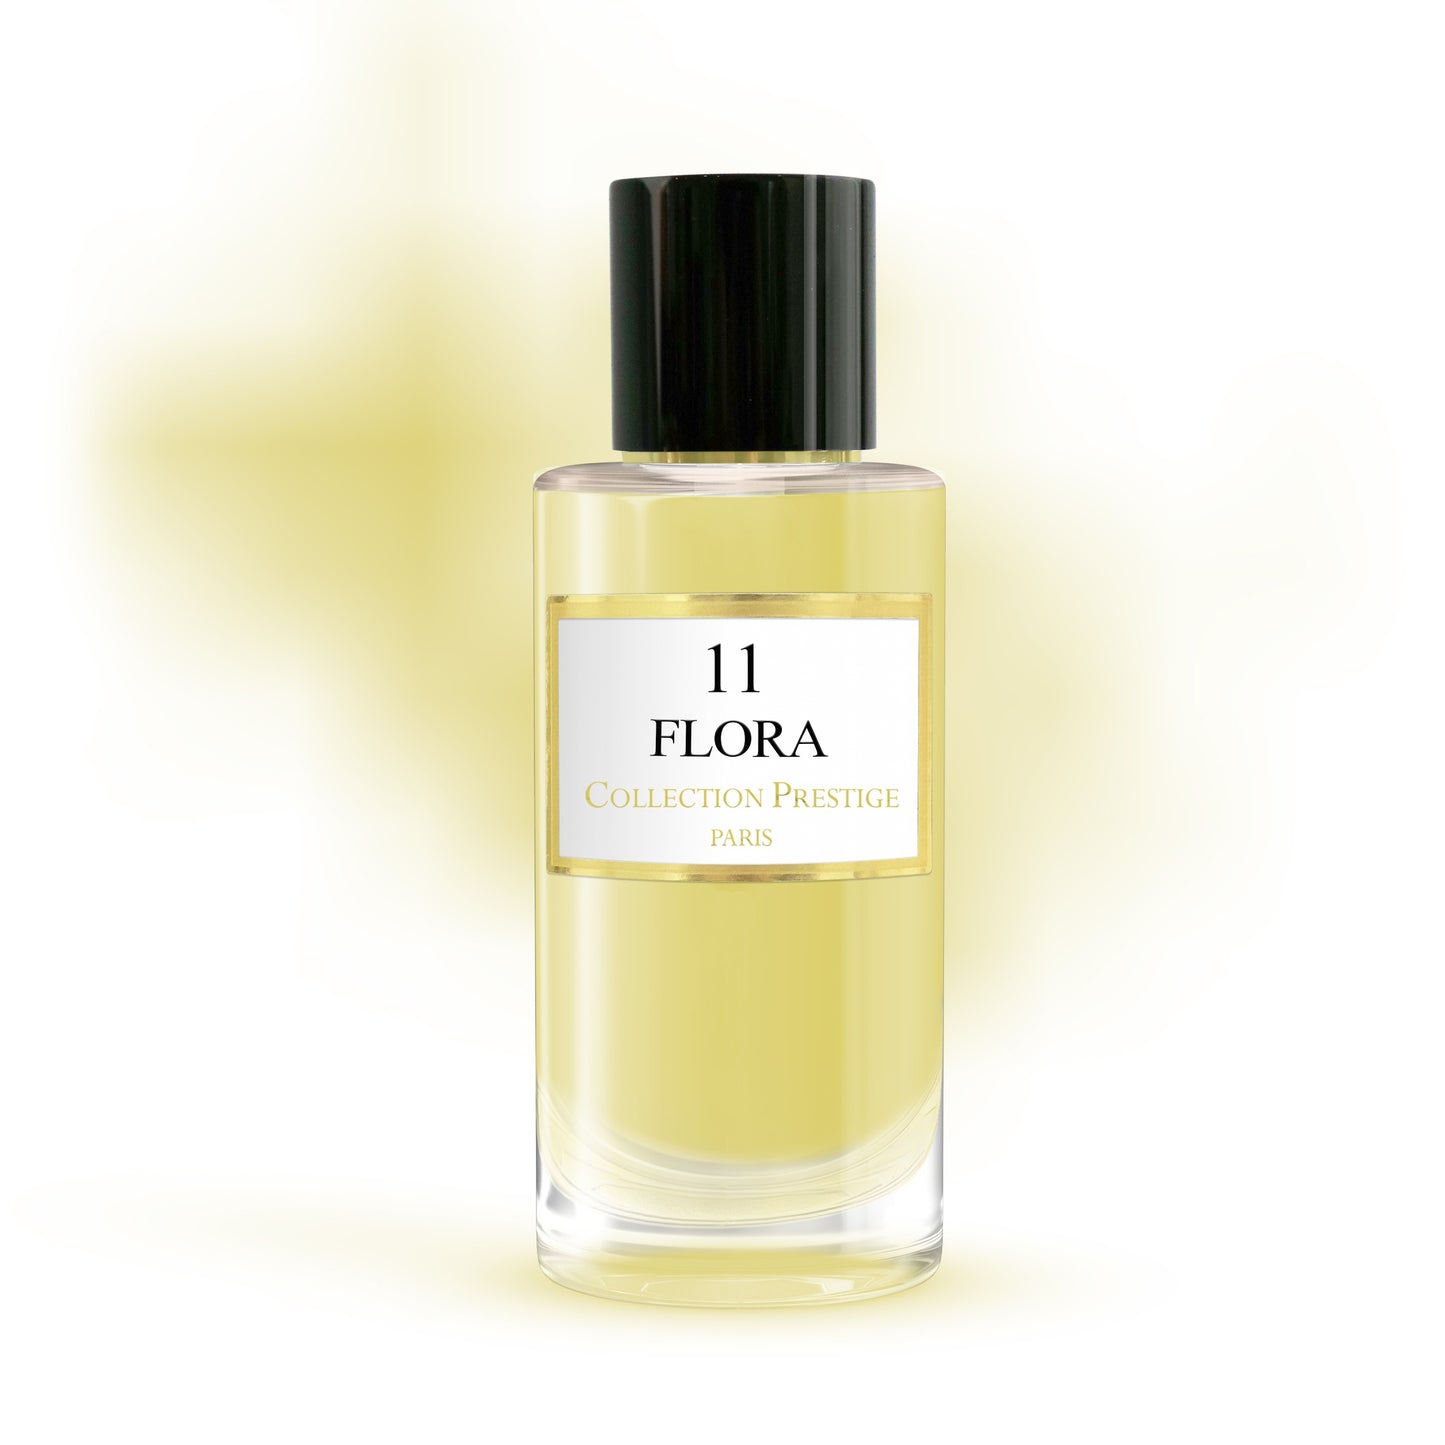 Collection Prestige - Flora - Eau de Parfum Mixte